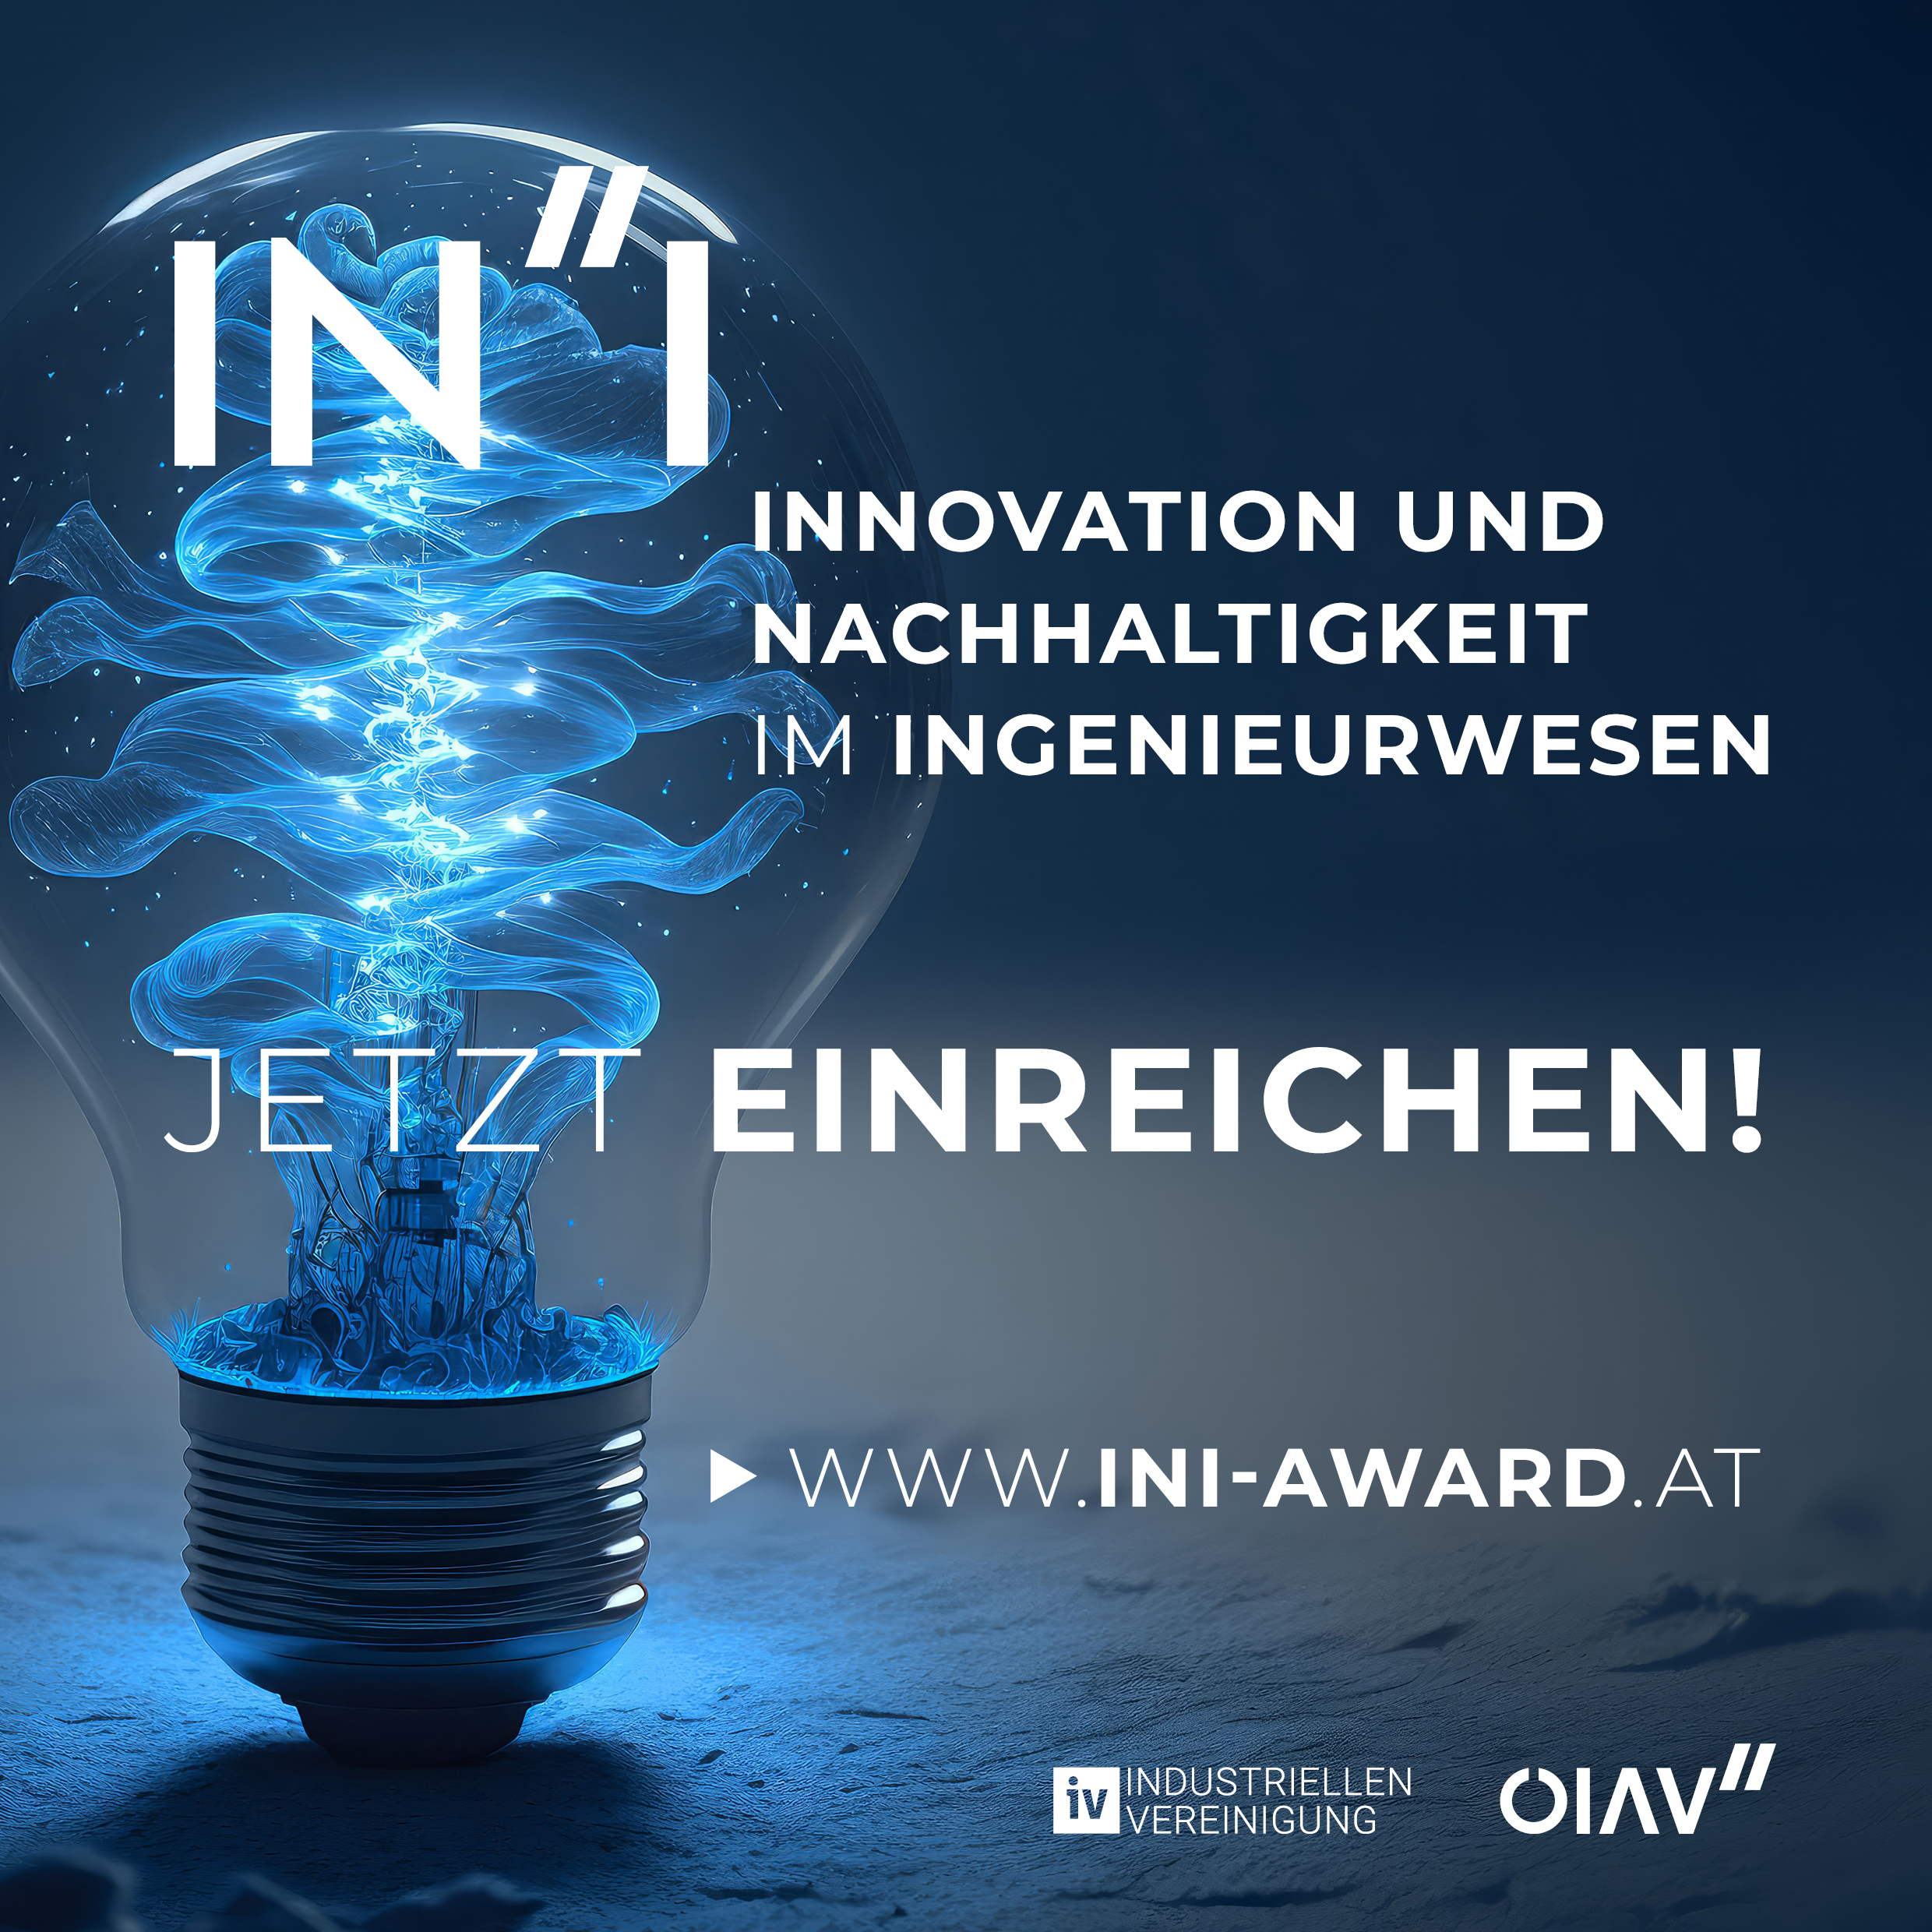 INI Award – Jetzt einreichen!